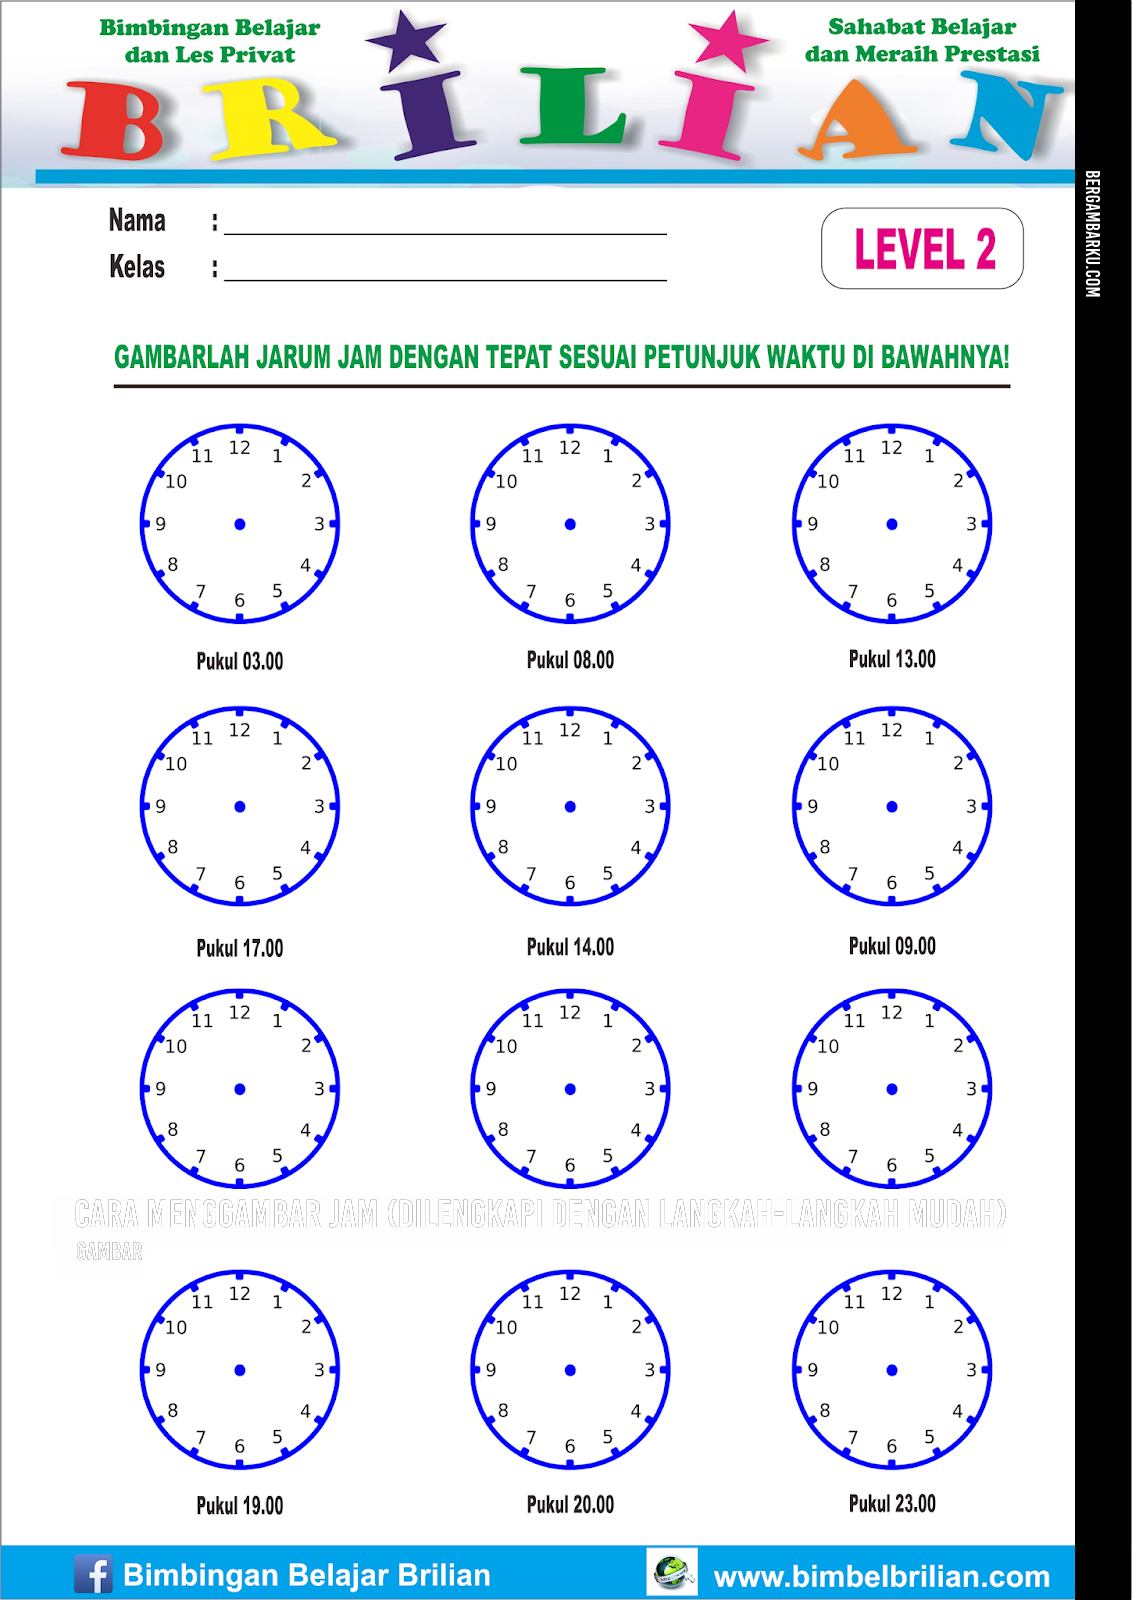 Cara Menggambar Jam (Dilengkapi dengan Langkah-Langkah Mudah)